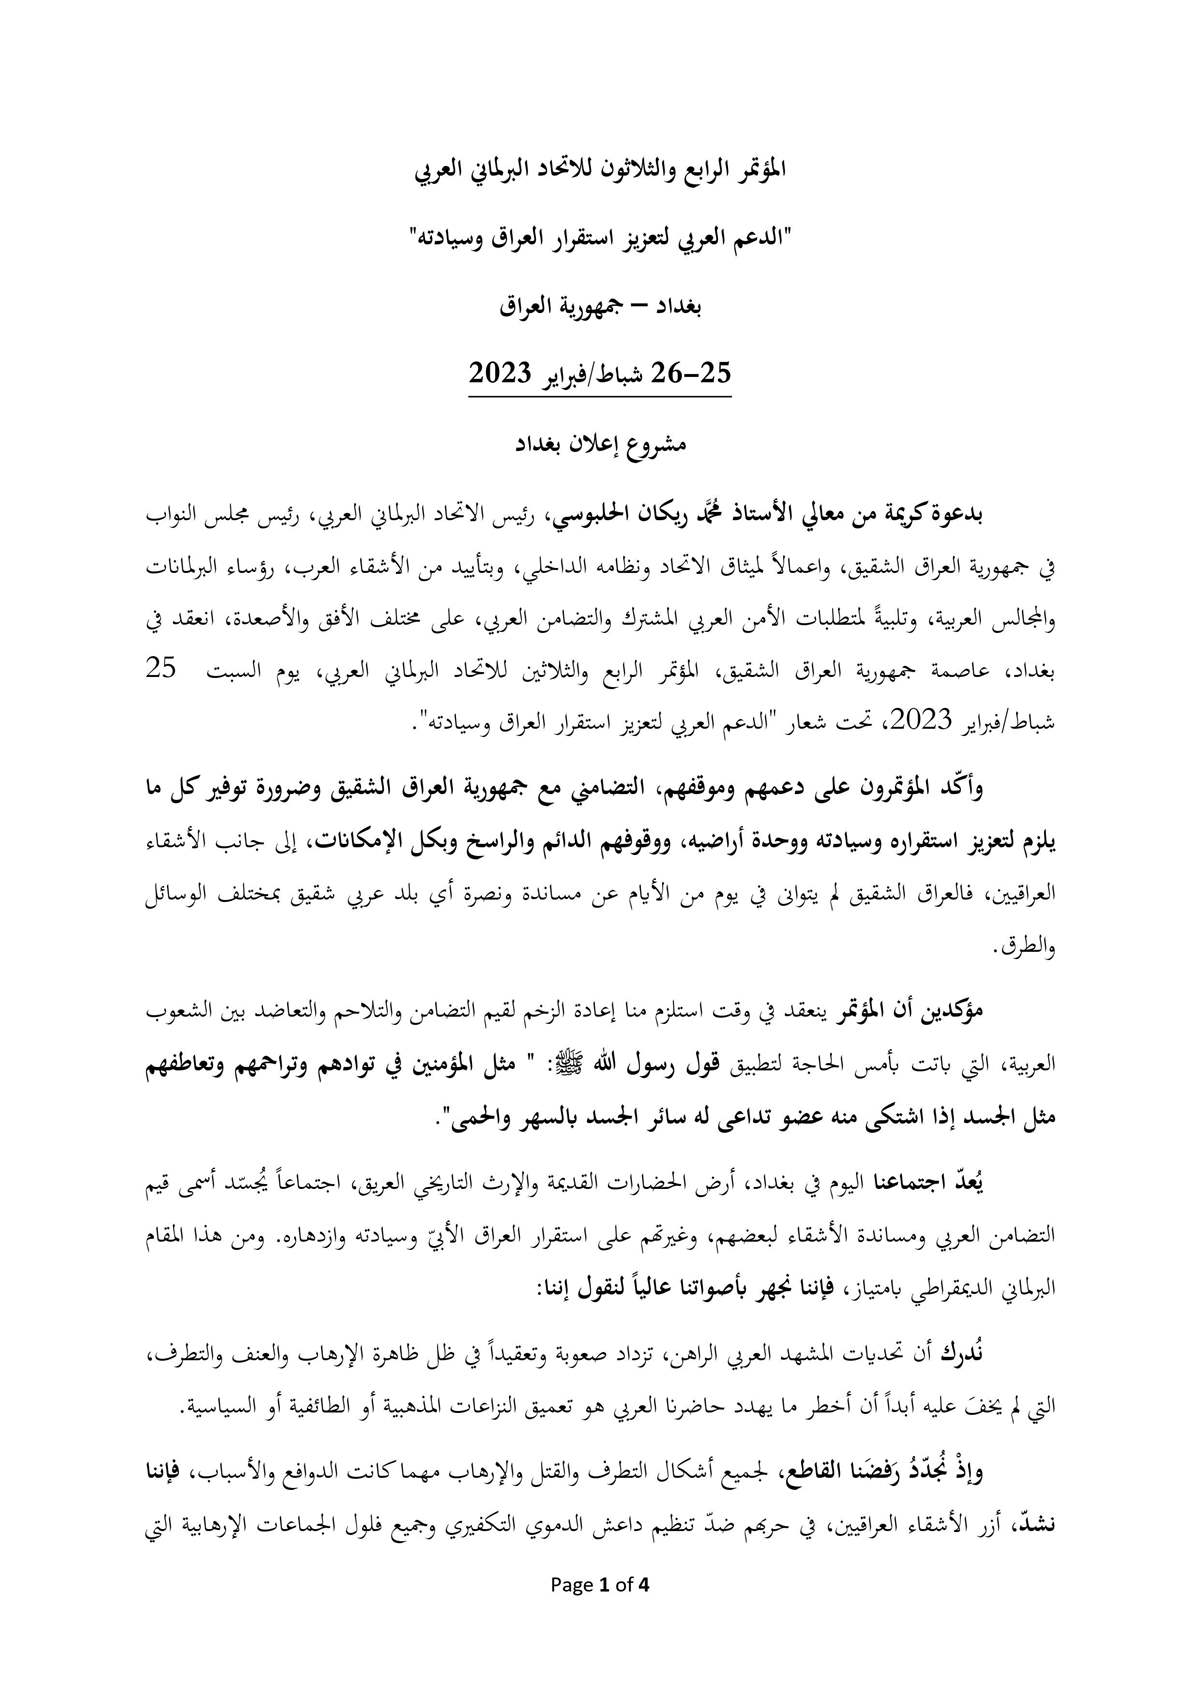 صحيفة العراق تنشُر النص الكامل لإعلان بغداد